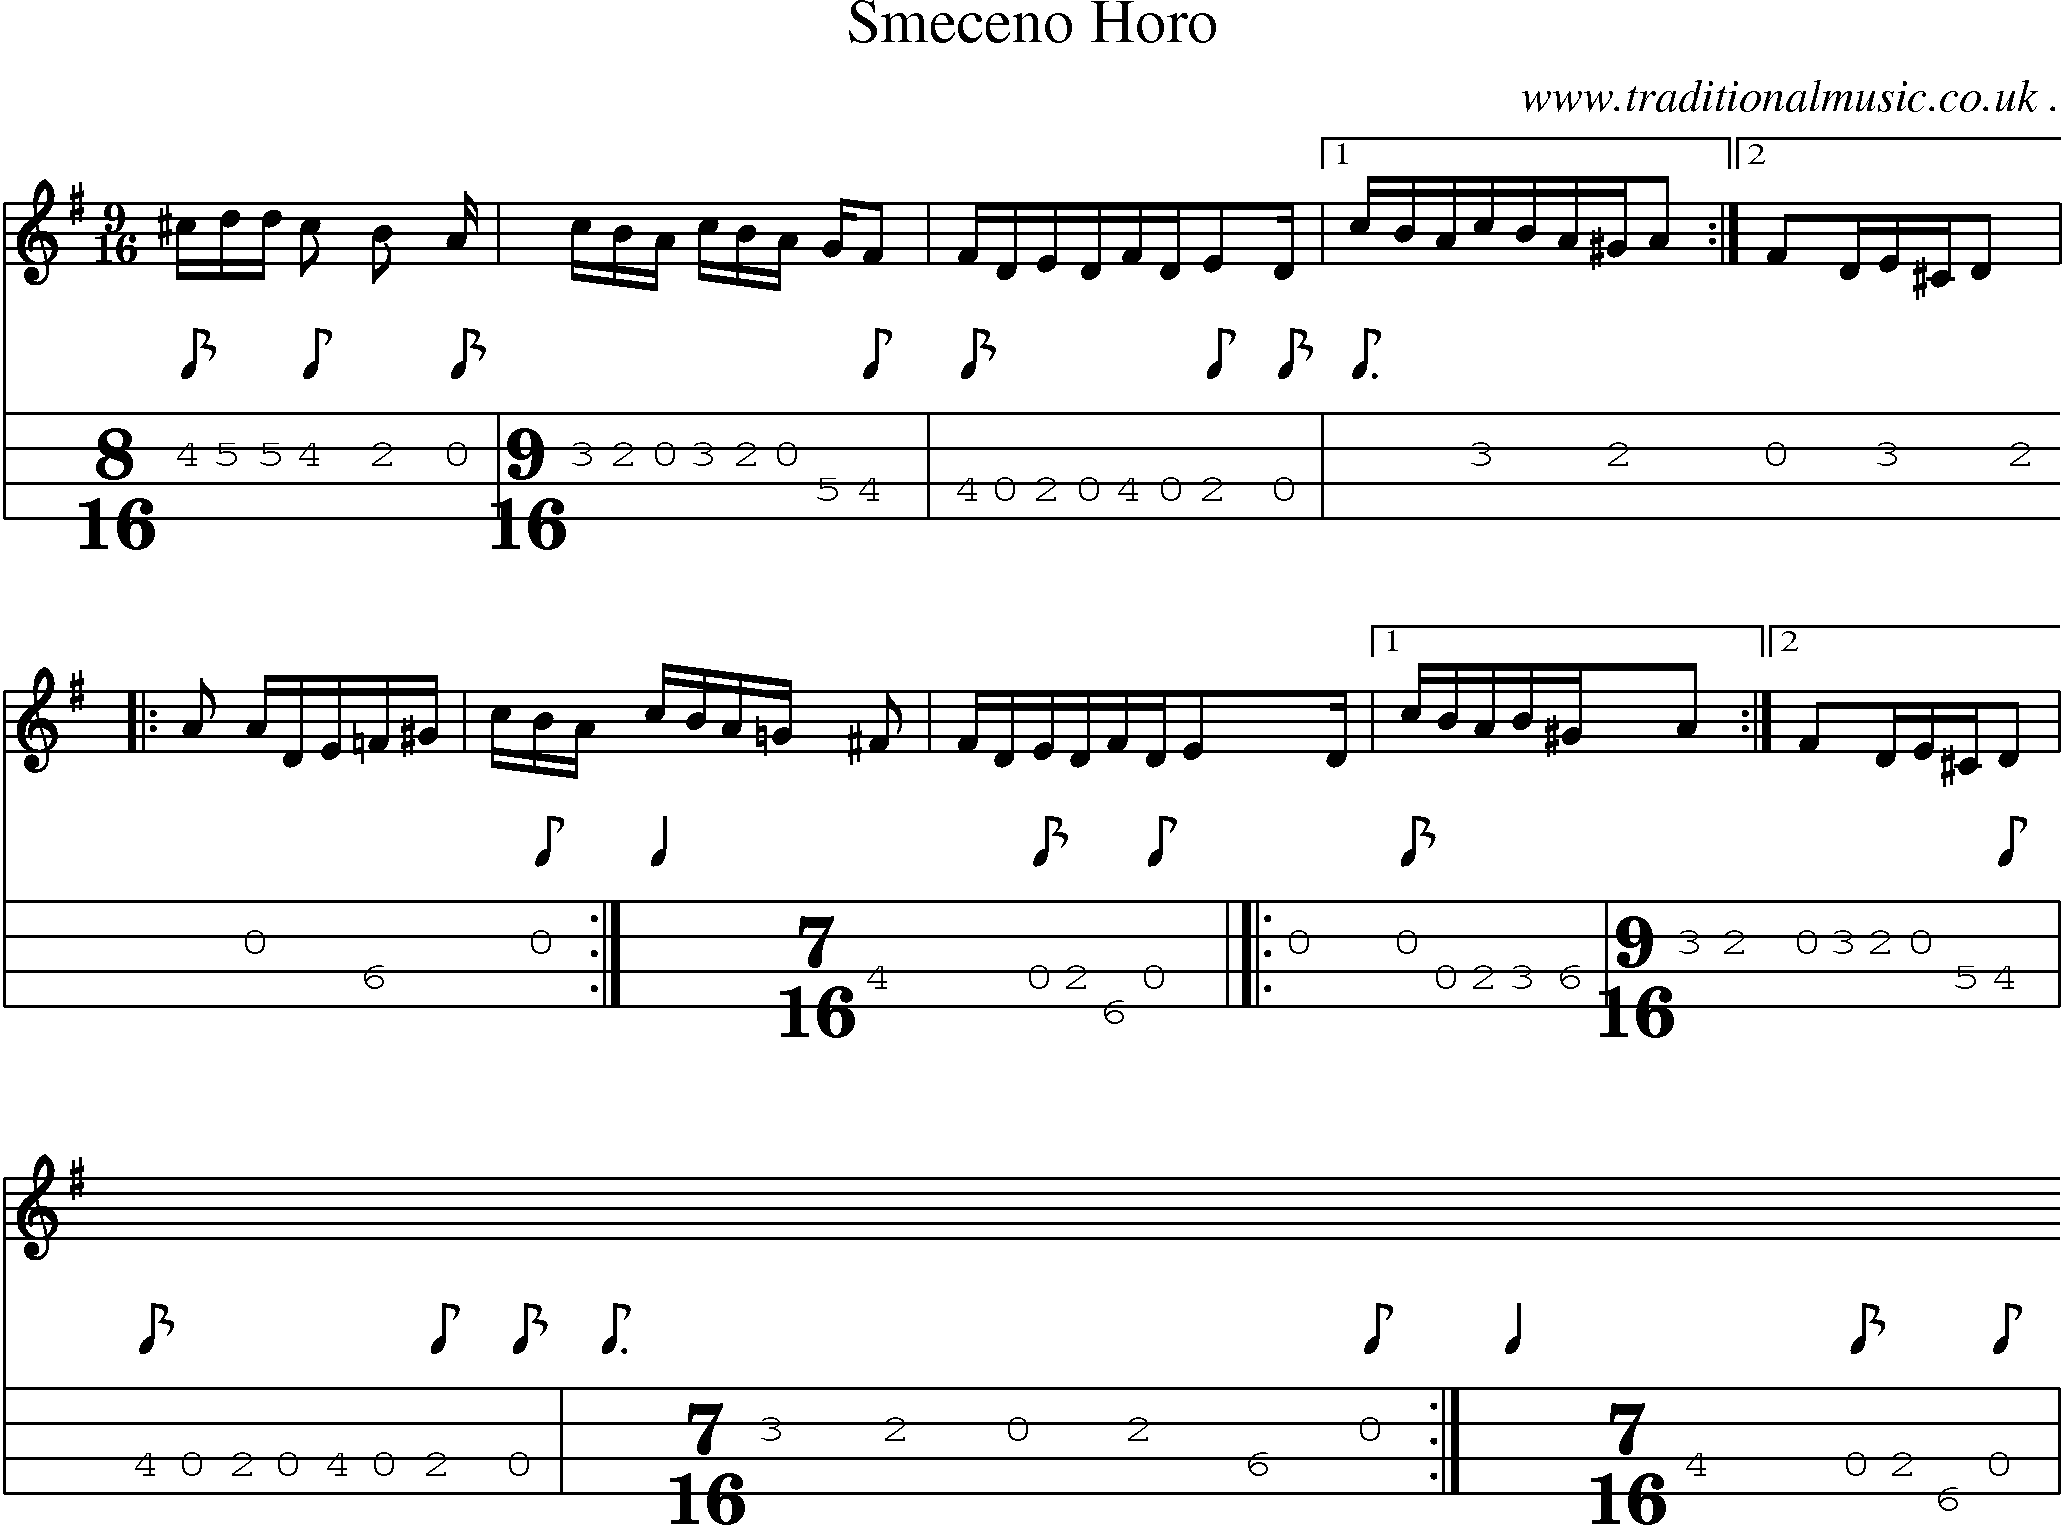 Sheet-Music and Mandolin Tabs for Smeceno Horo